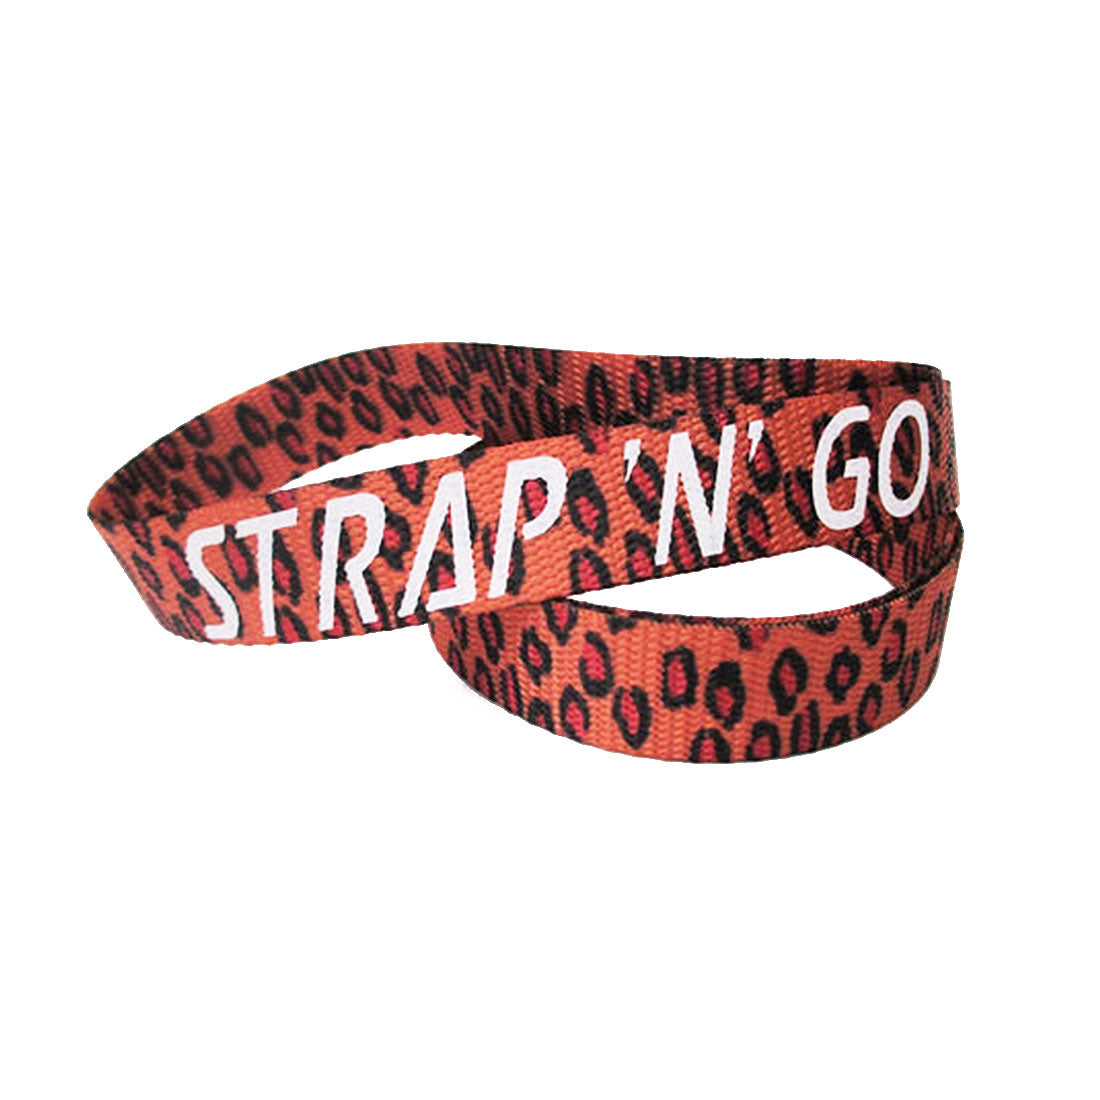 Strap N Go Skate Noose/Leash - Patterns Jaguar Roller Skate Accessories